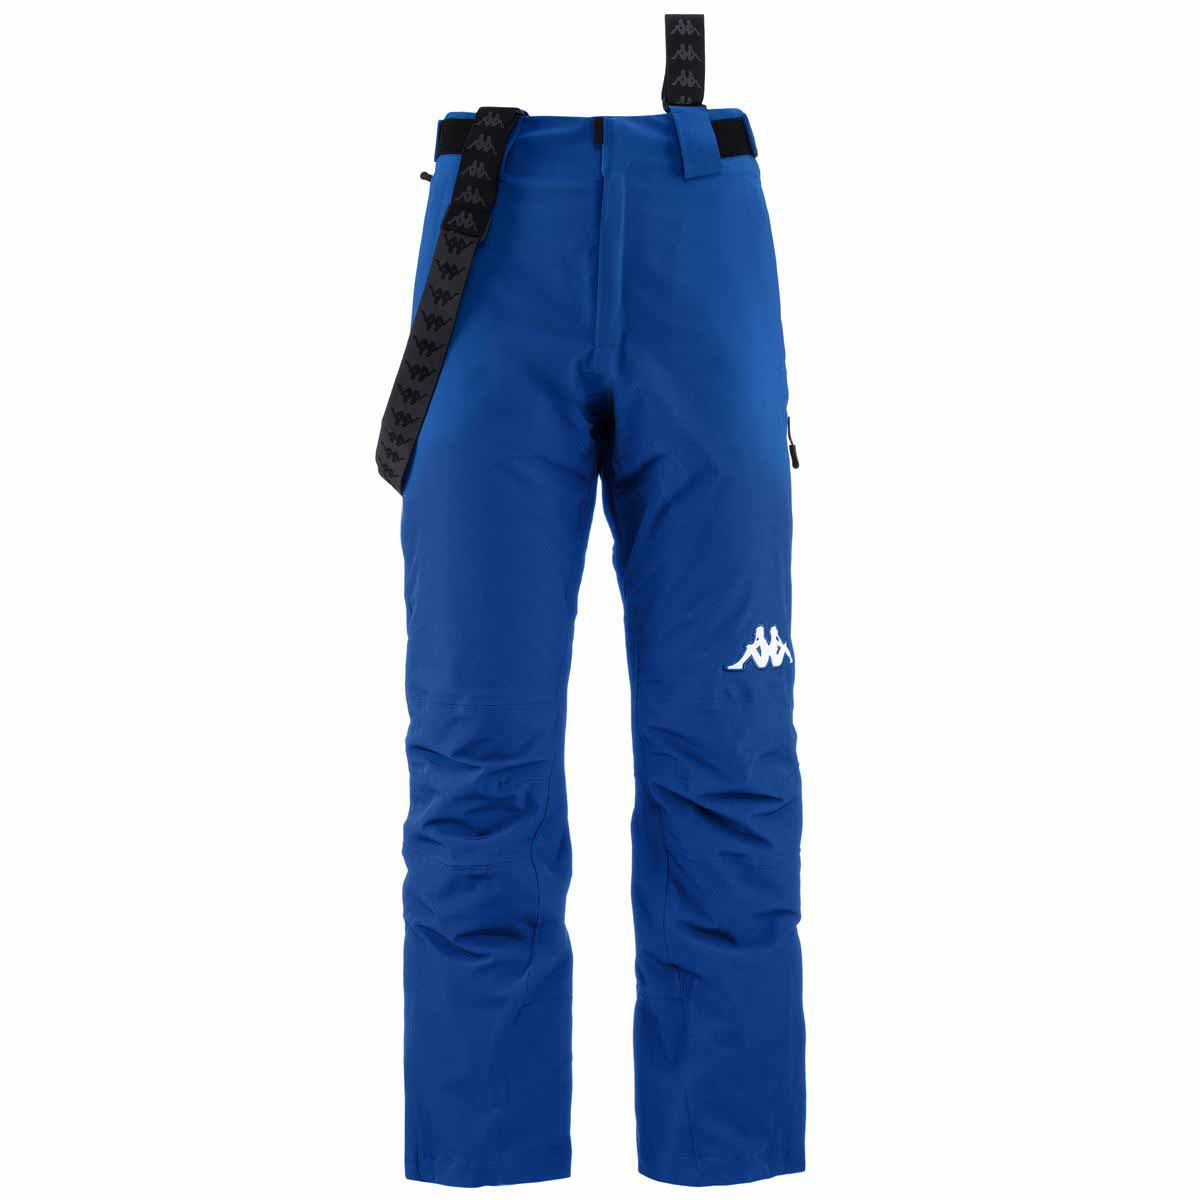 Pantalón de esquí Hombre 6Cento 664 Azul